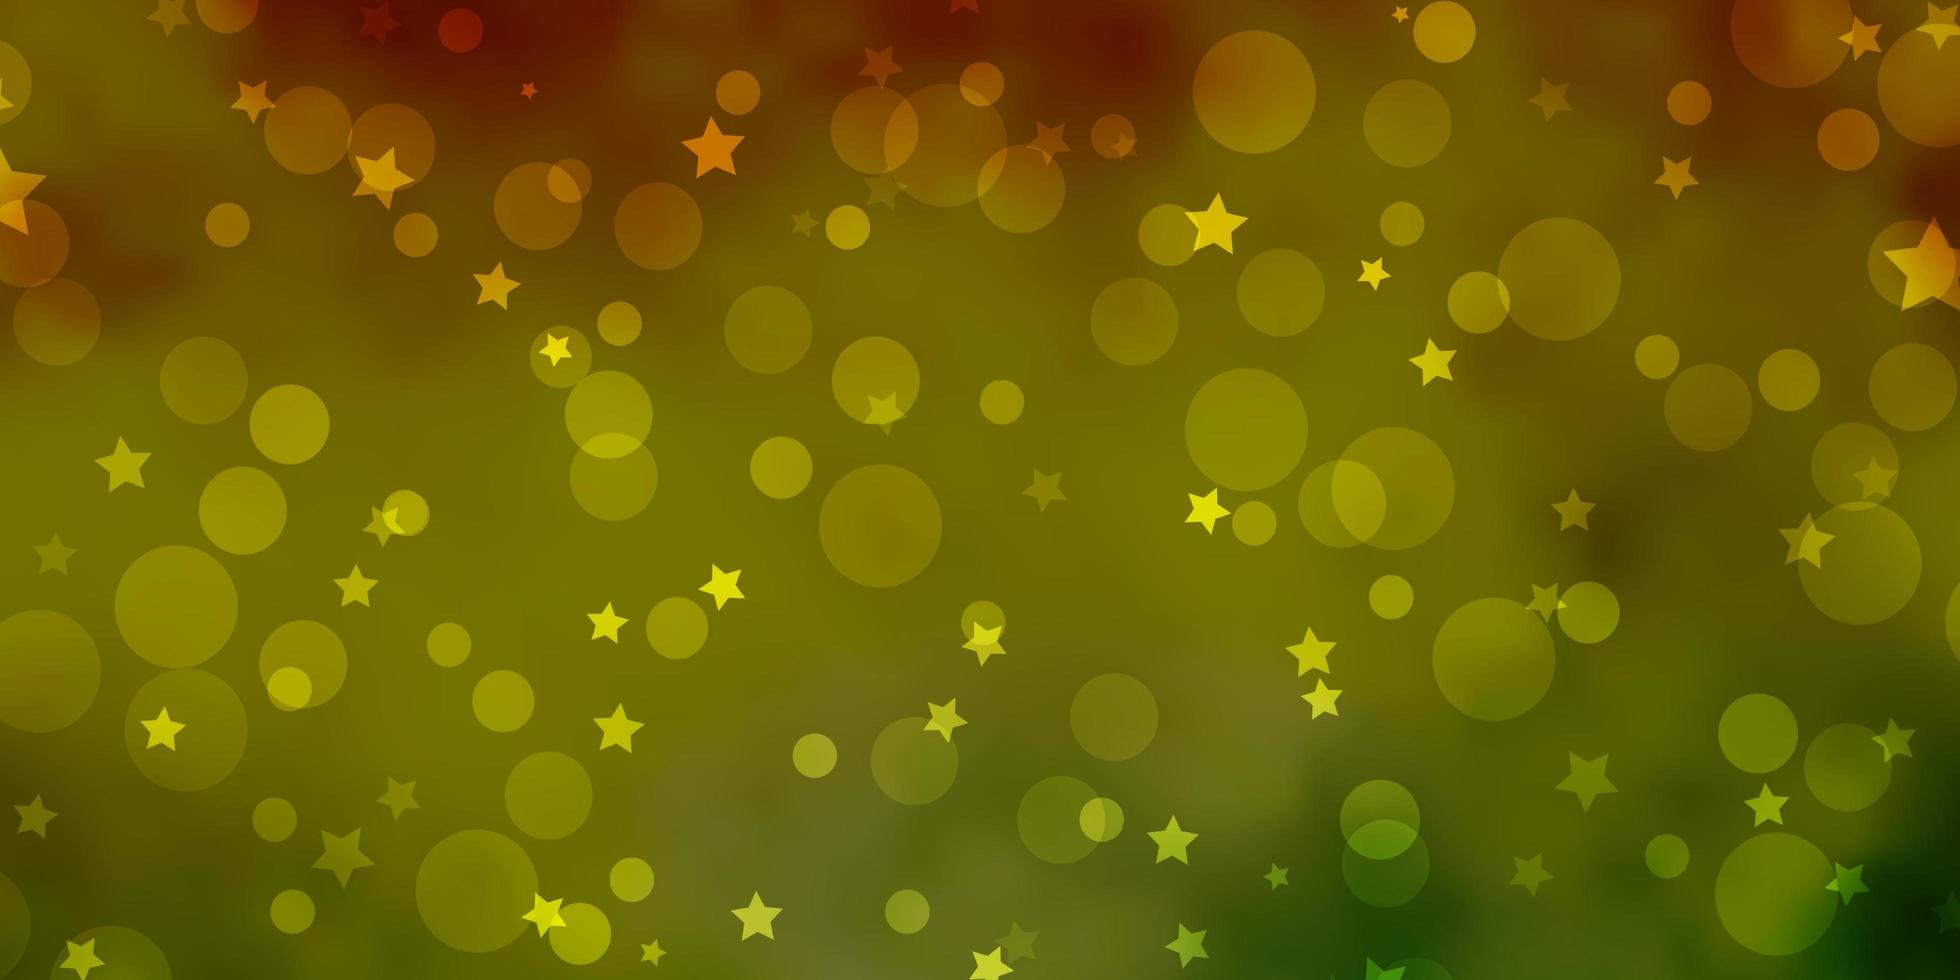 textura de vetor verde e amarelo claro com círculos, estrelas.